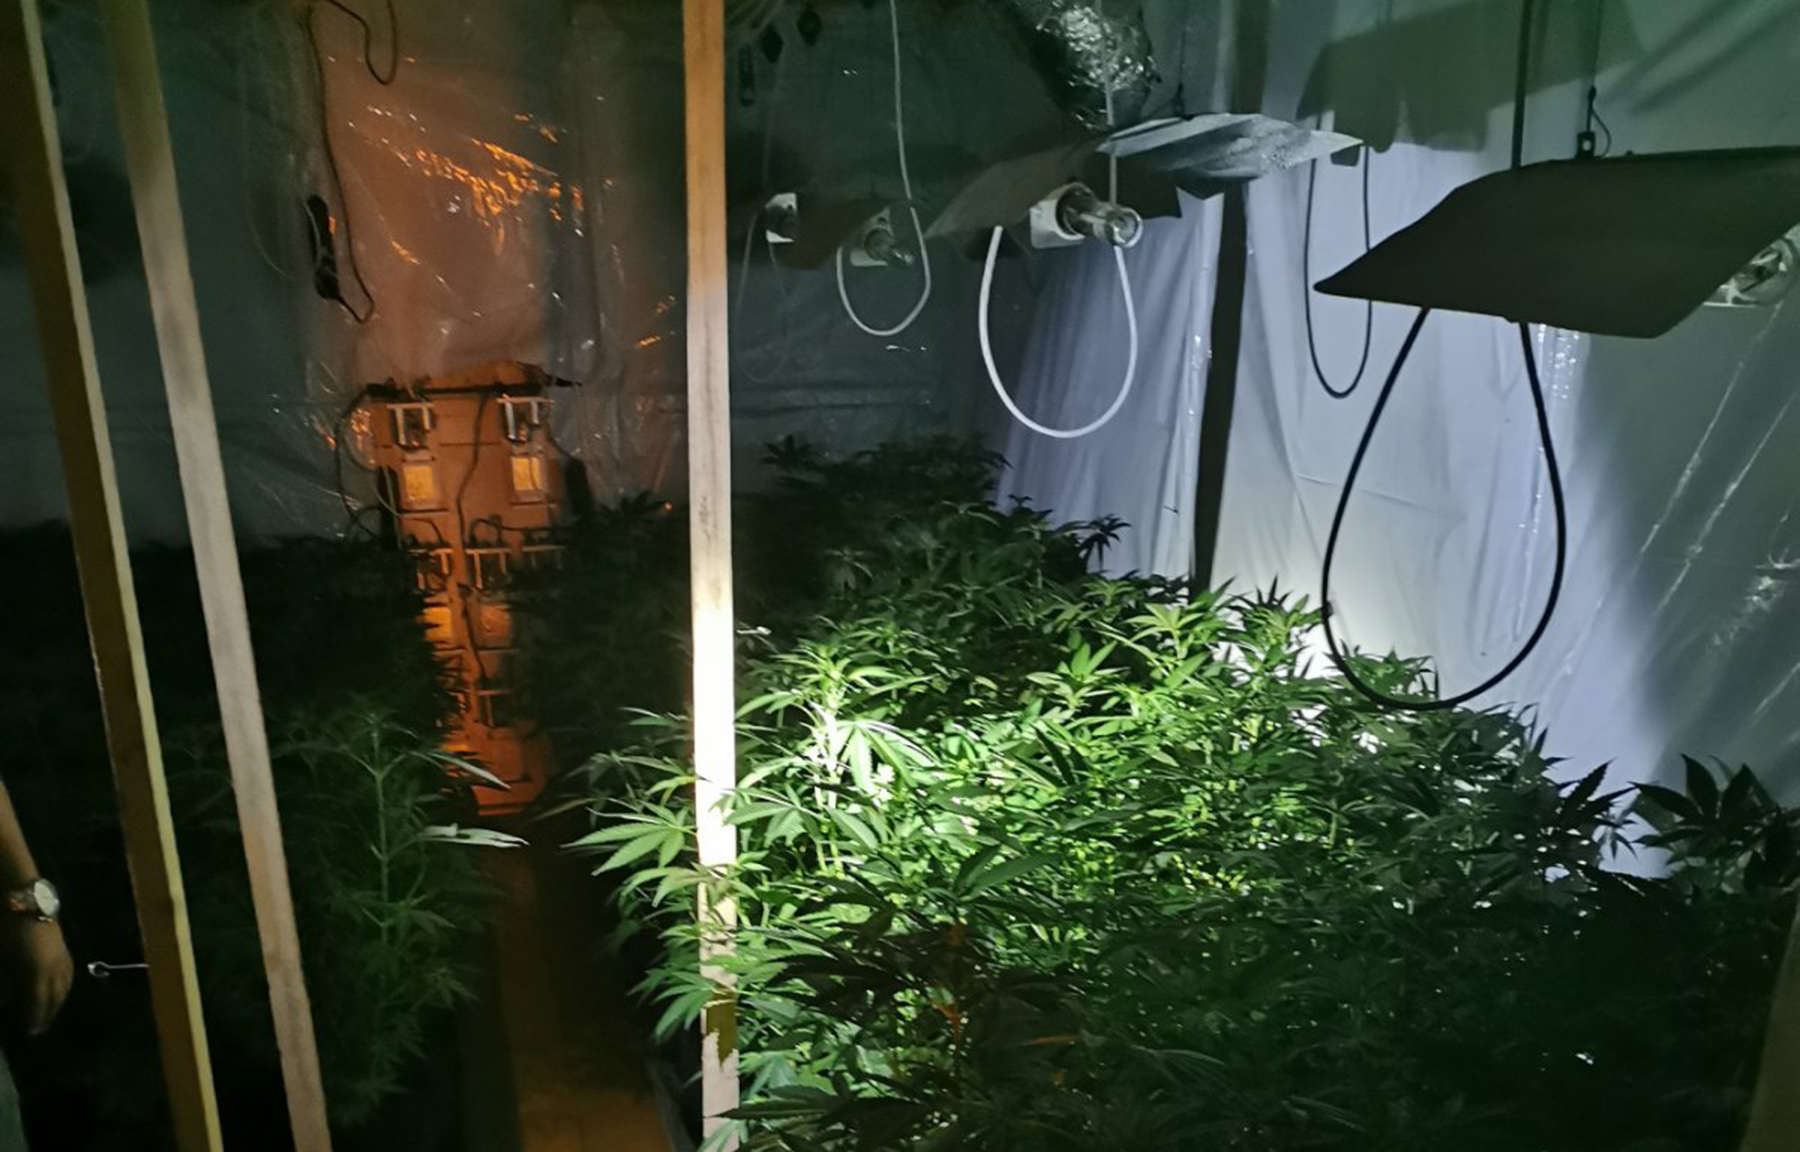 Полиција открила лабораторију за узгој марихуане, ухапшен осумњичени